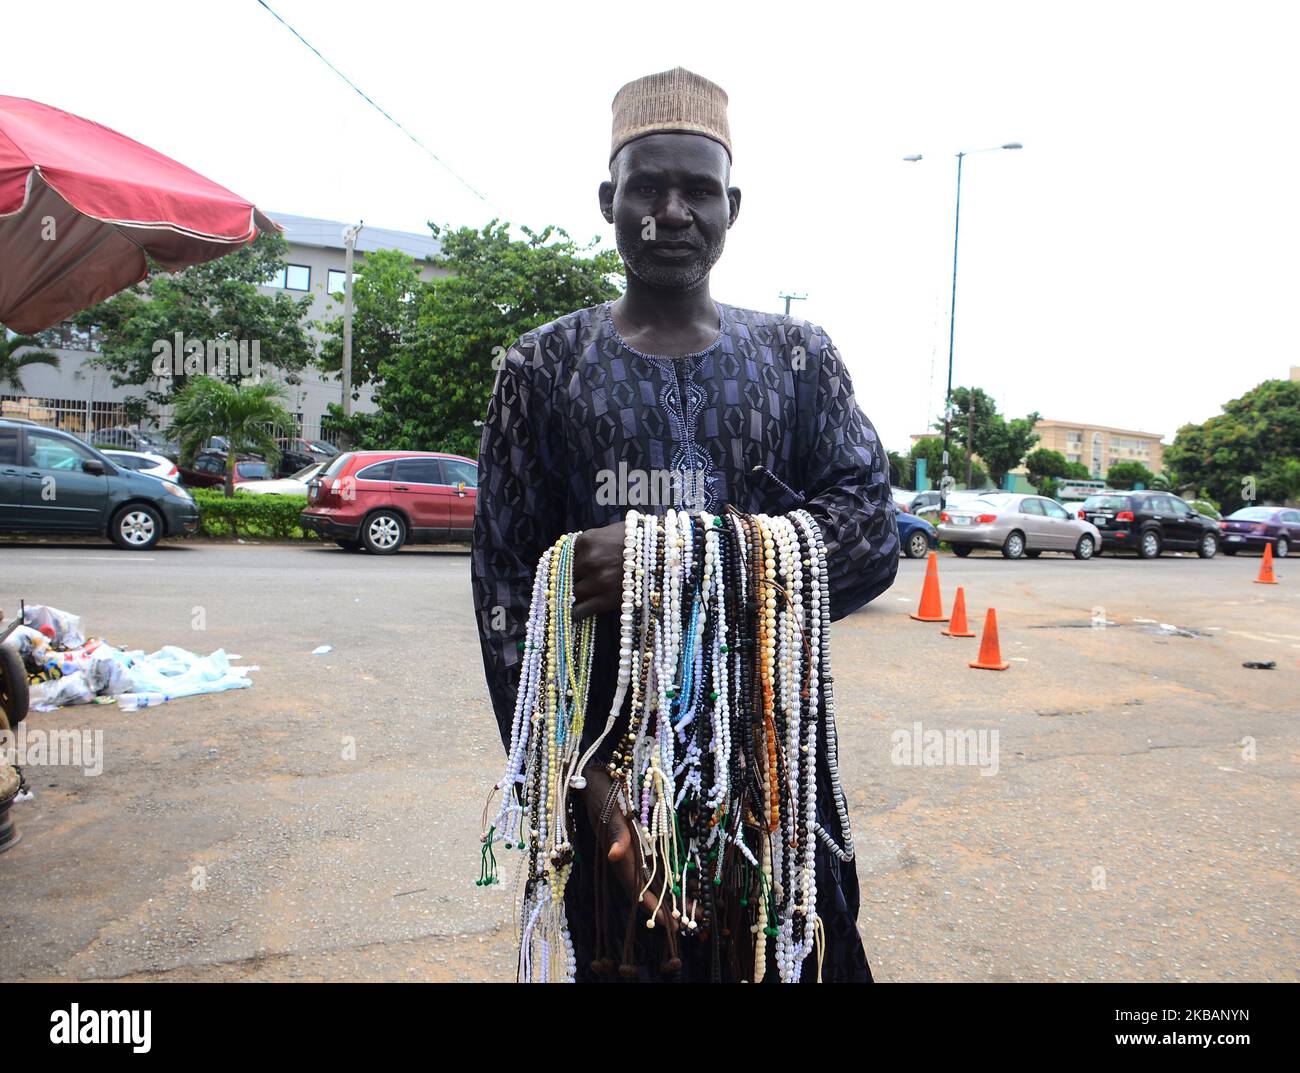 Ein muslimischer Mann verkauft im Geschäftsviertel von Alausa einen Gebetsrosar, um Eid el Maulud am 10. November 2019 in Lagos, Nigeria, zu feiern und Eid el Maulud zu feiern. Eid el Maulud ist der Geburtstag des heiligen Propheten Muhammad, dem Tag, an dem alle 12. Rabi'ul Awwal des islamischen Kalenders markiert sind. Die Lehre des Islam konzentriert sich auf den Glauben an Gott, die Hingabe und den Dienst an der Menschheit. (Foto von Olukayode Jaiyeola/NurPhoto) Stockfoto